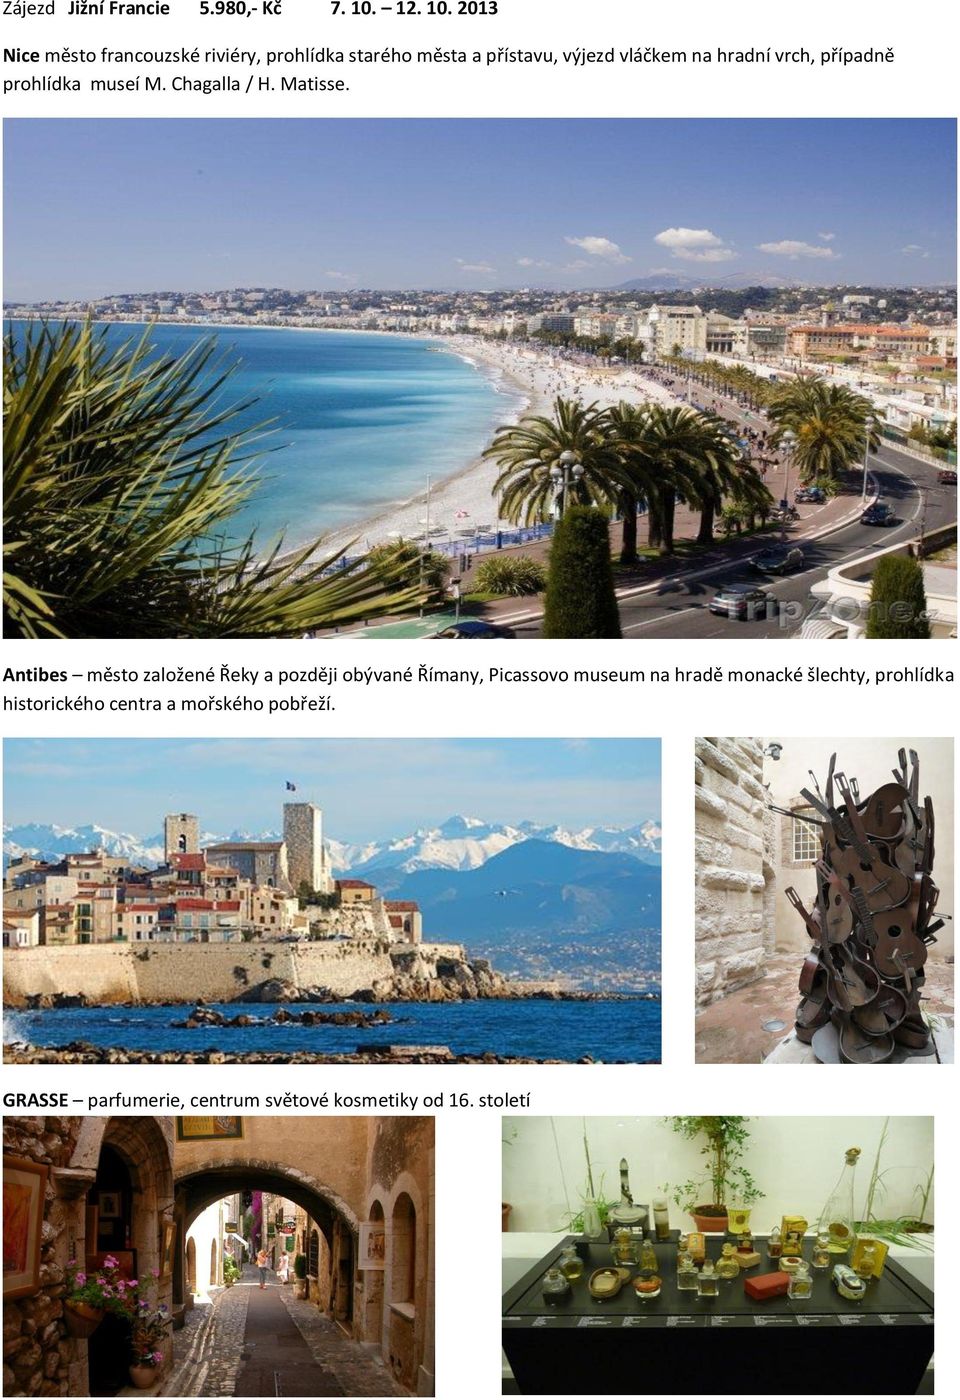 2013 Nice město francouzské riviéry, prohlídka starého města a přístavu, výjezd vláčkem na hradní